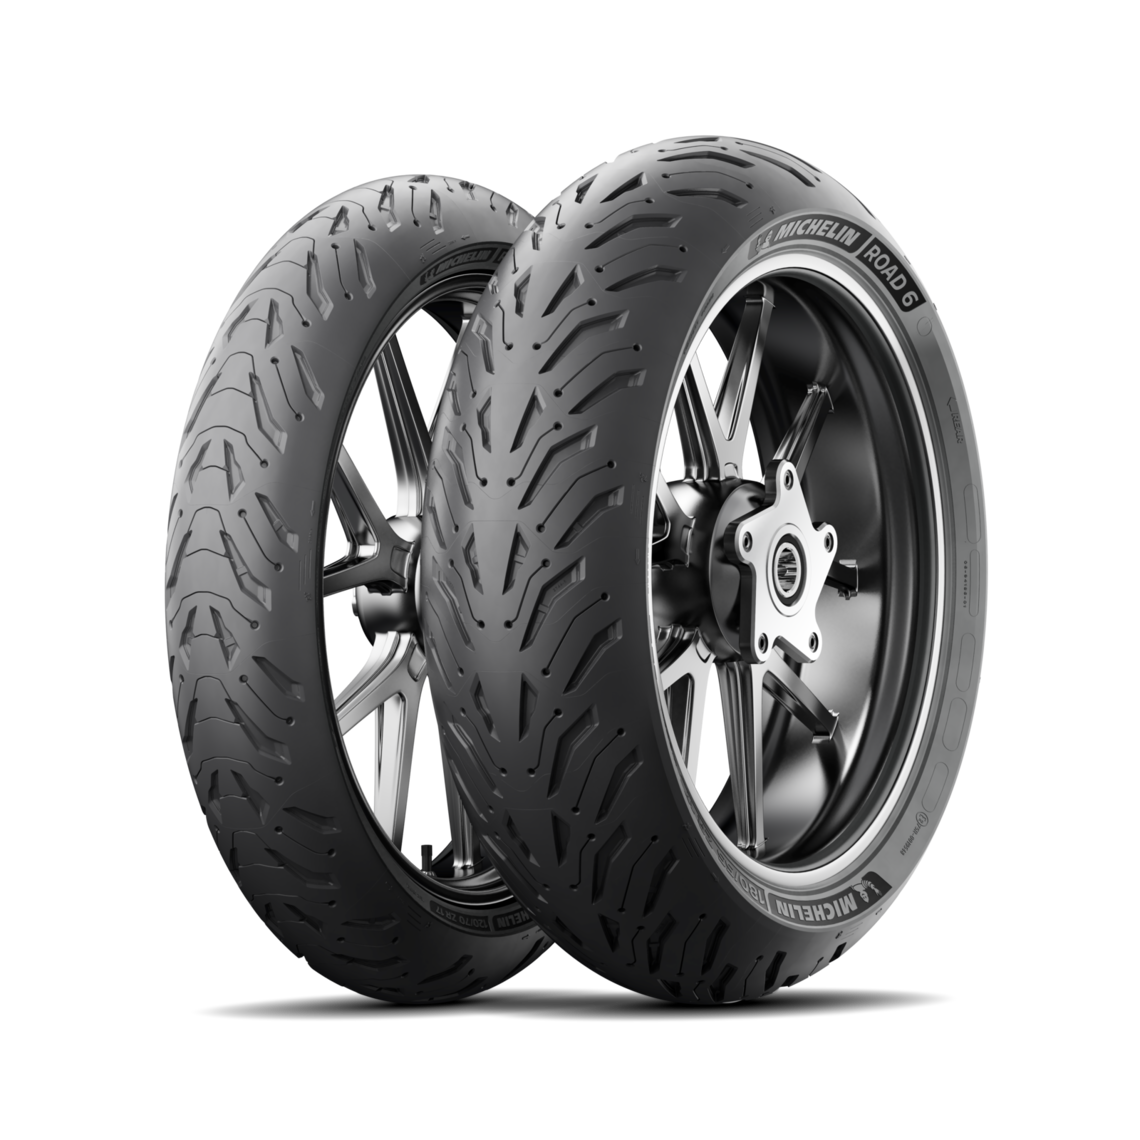 Gomme Nuove Michelin 120/70 ZR18 59W ROAD 6 pneumatici nuovi Estivo